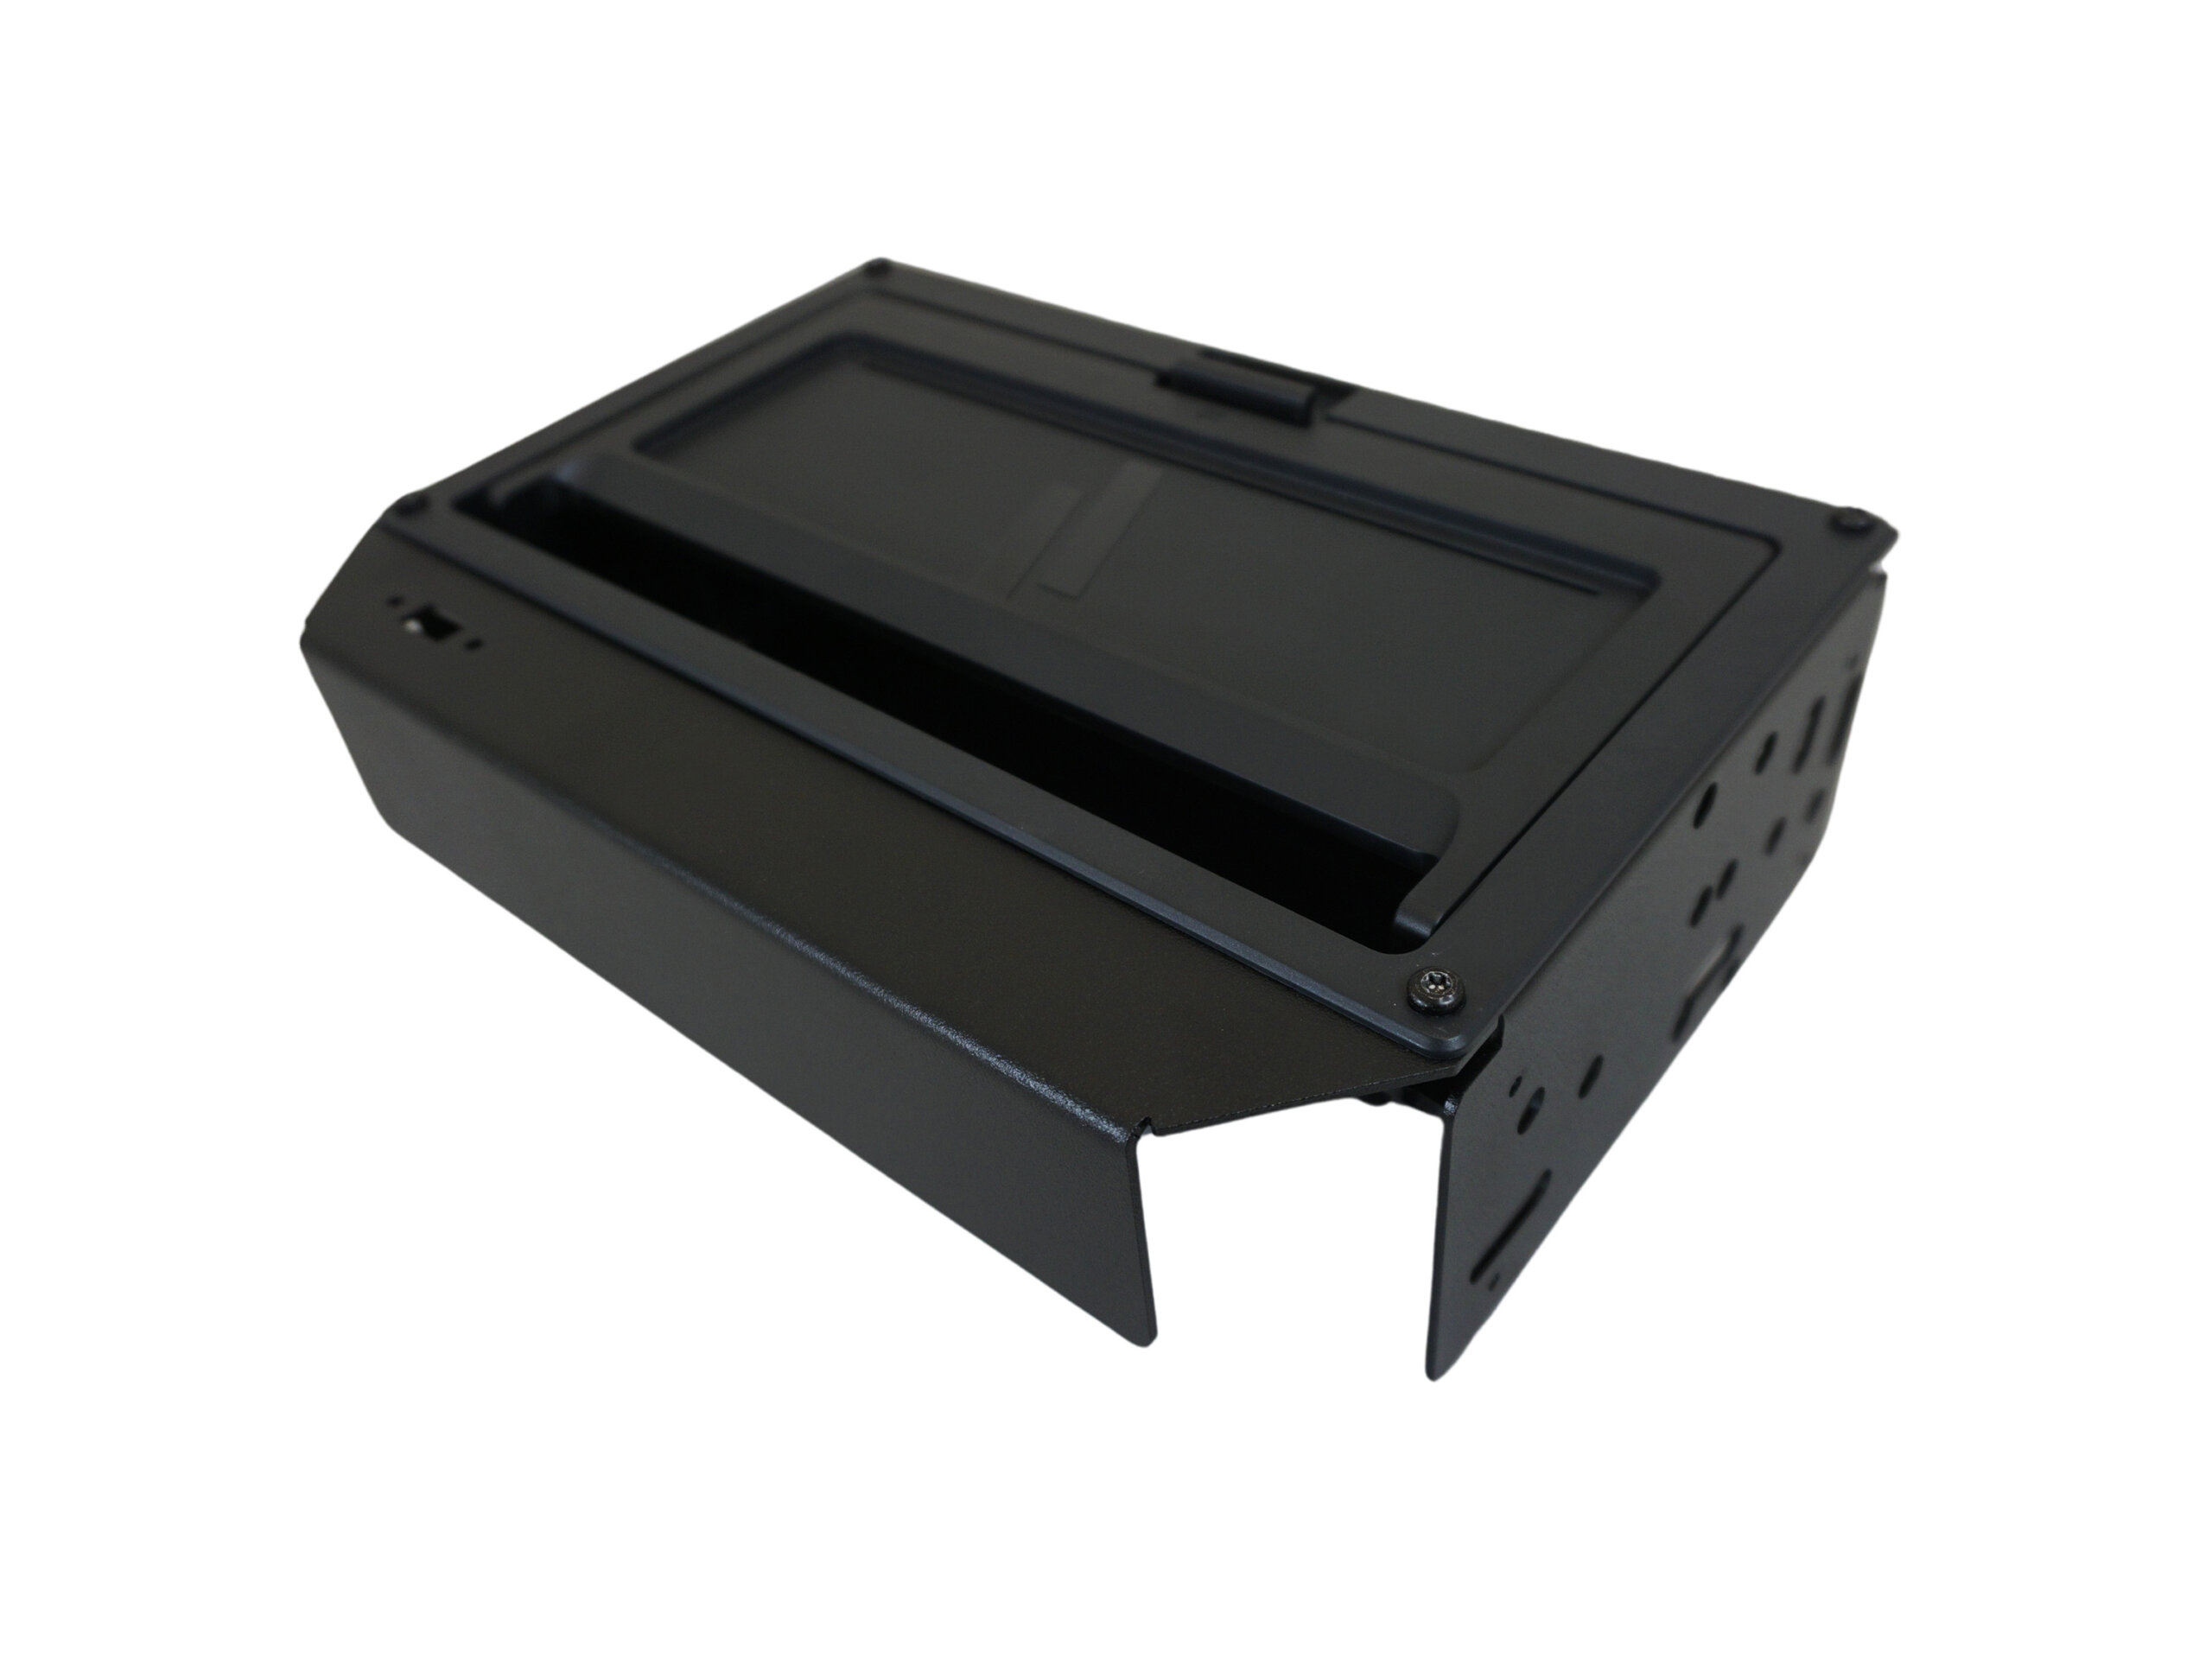 Brother PocketJet Printer Mount for Ford Interceptor Utility